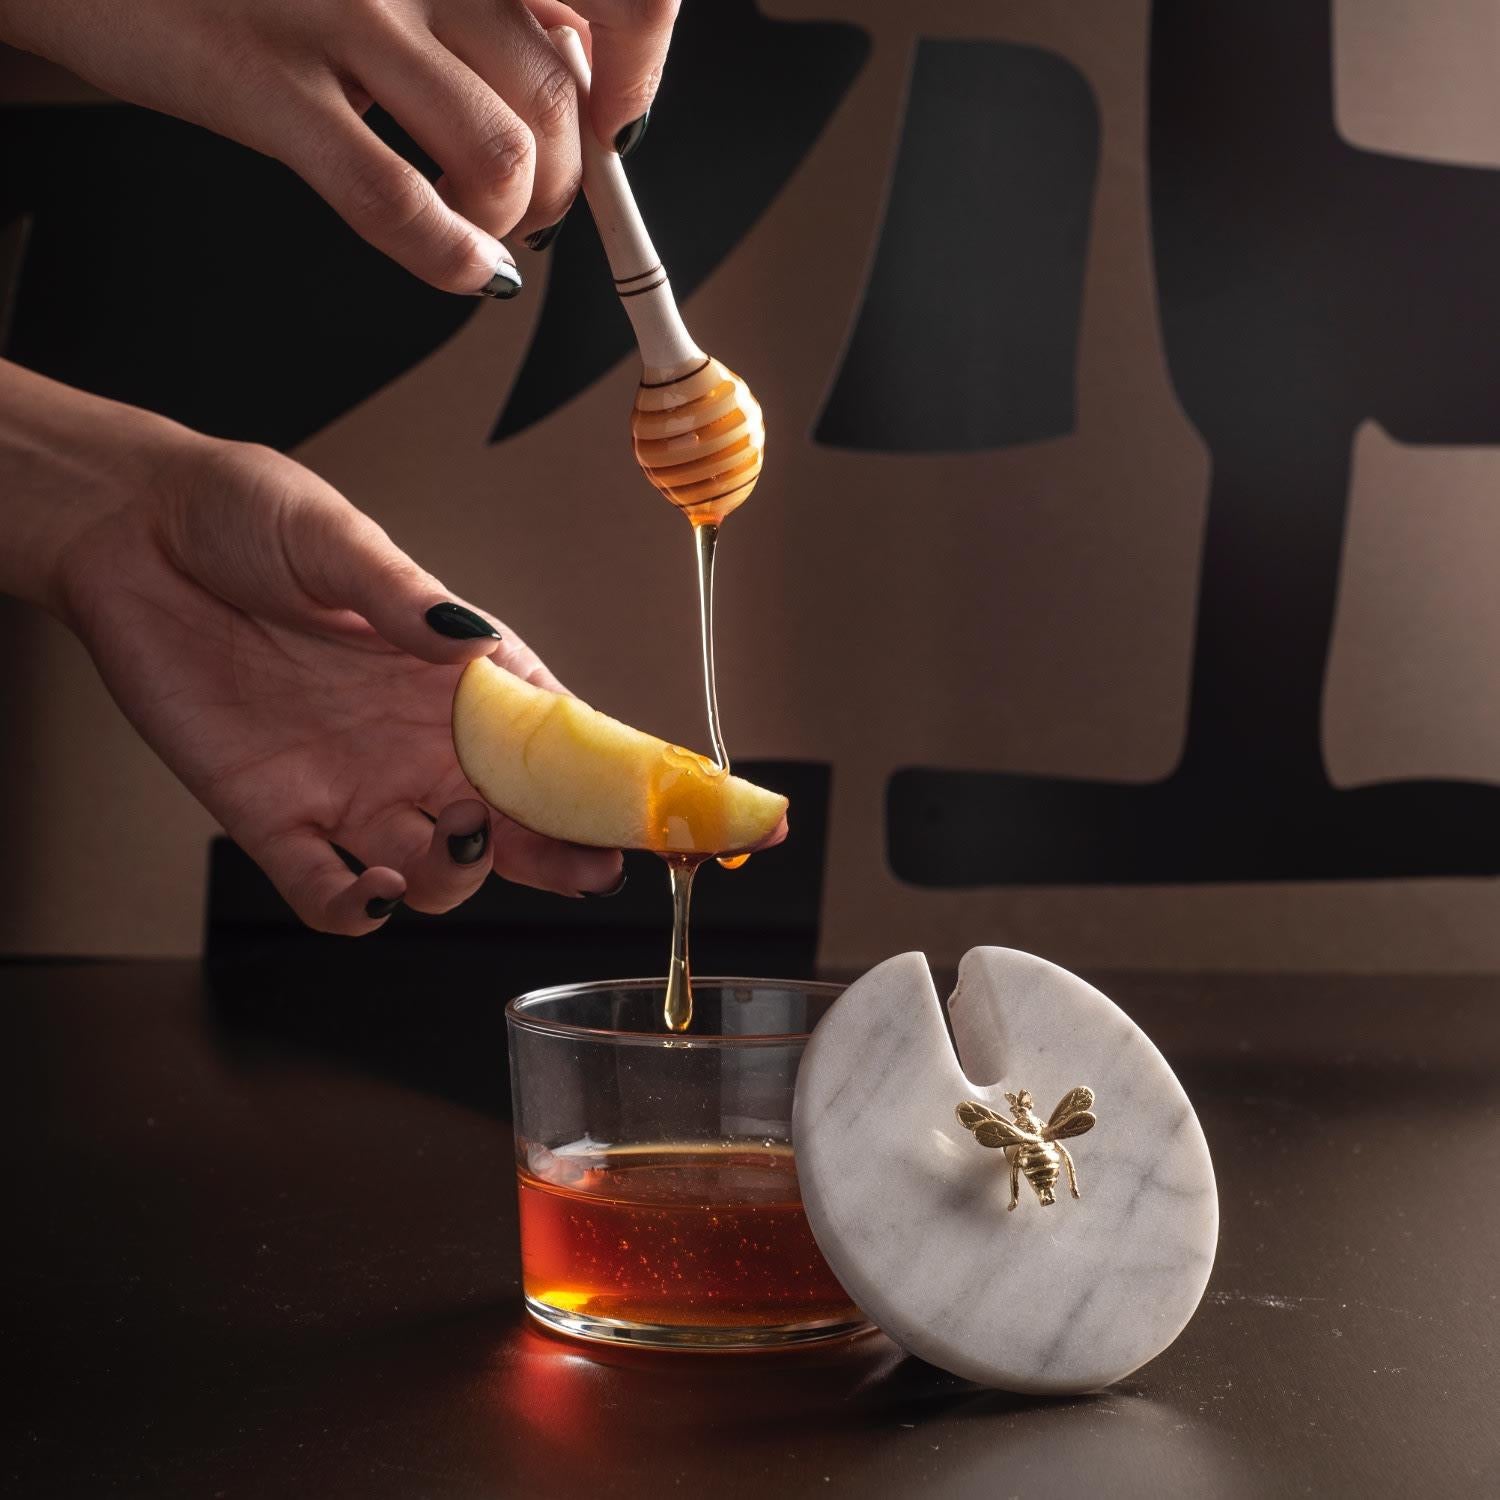 Der Bienenstock-Honigtopf von bruci ist ein faszinierendes Wunderwerk der Opulenz, eine wahre Verkörperung des dekorativen Luxus. Dieses kunstvoll gefertigte Glasgefäß wird durch einen handgeschnitzten Marmordeckel mit einer prächtigen goldenen